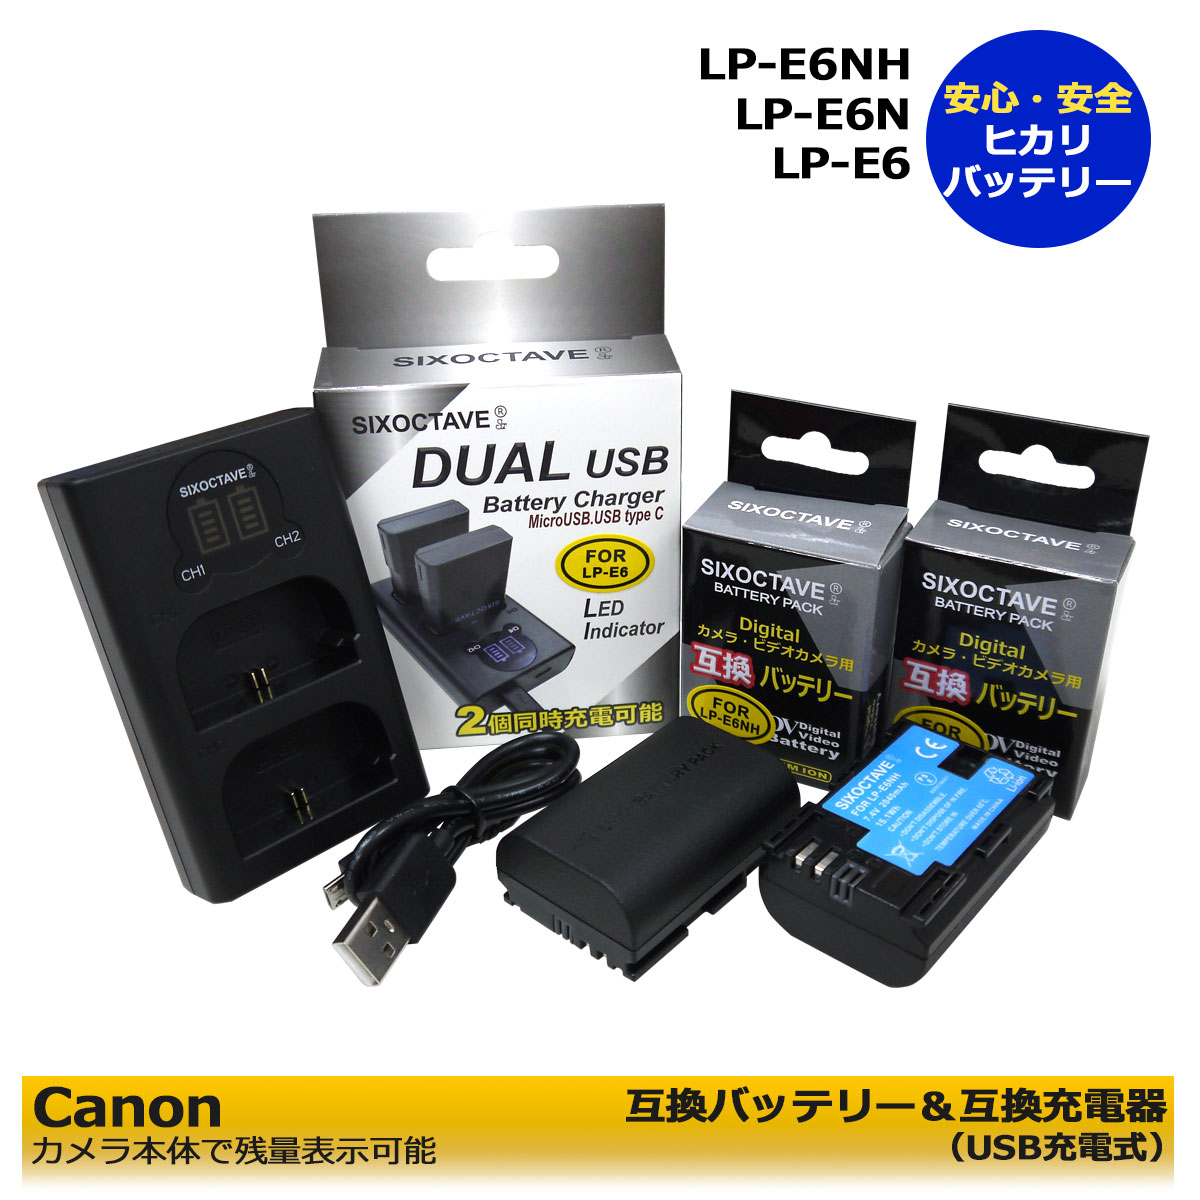 送料無料【あす楽対応】CANON LP-E6NH LP-E6 互換バッテリー 2個と デュアル 互換USB充電器の 3点セット EOS 6D Mark II / EOS 70D EOS 7D / EOS 7D Mark II / EOS 80D XC15 / EOS 90D （EOS R5 / EOS R6のみ本体充電可能）2個同時充電可